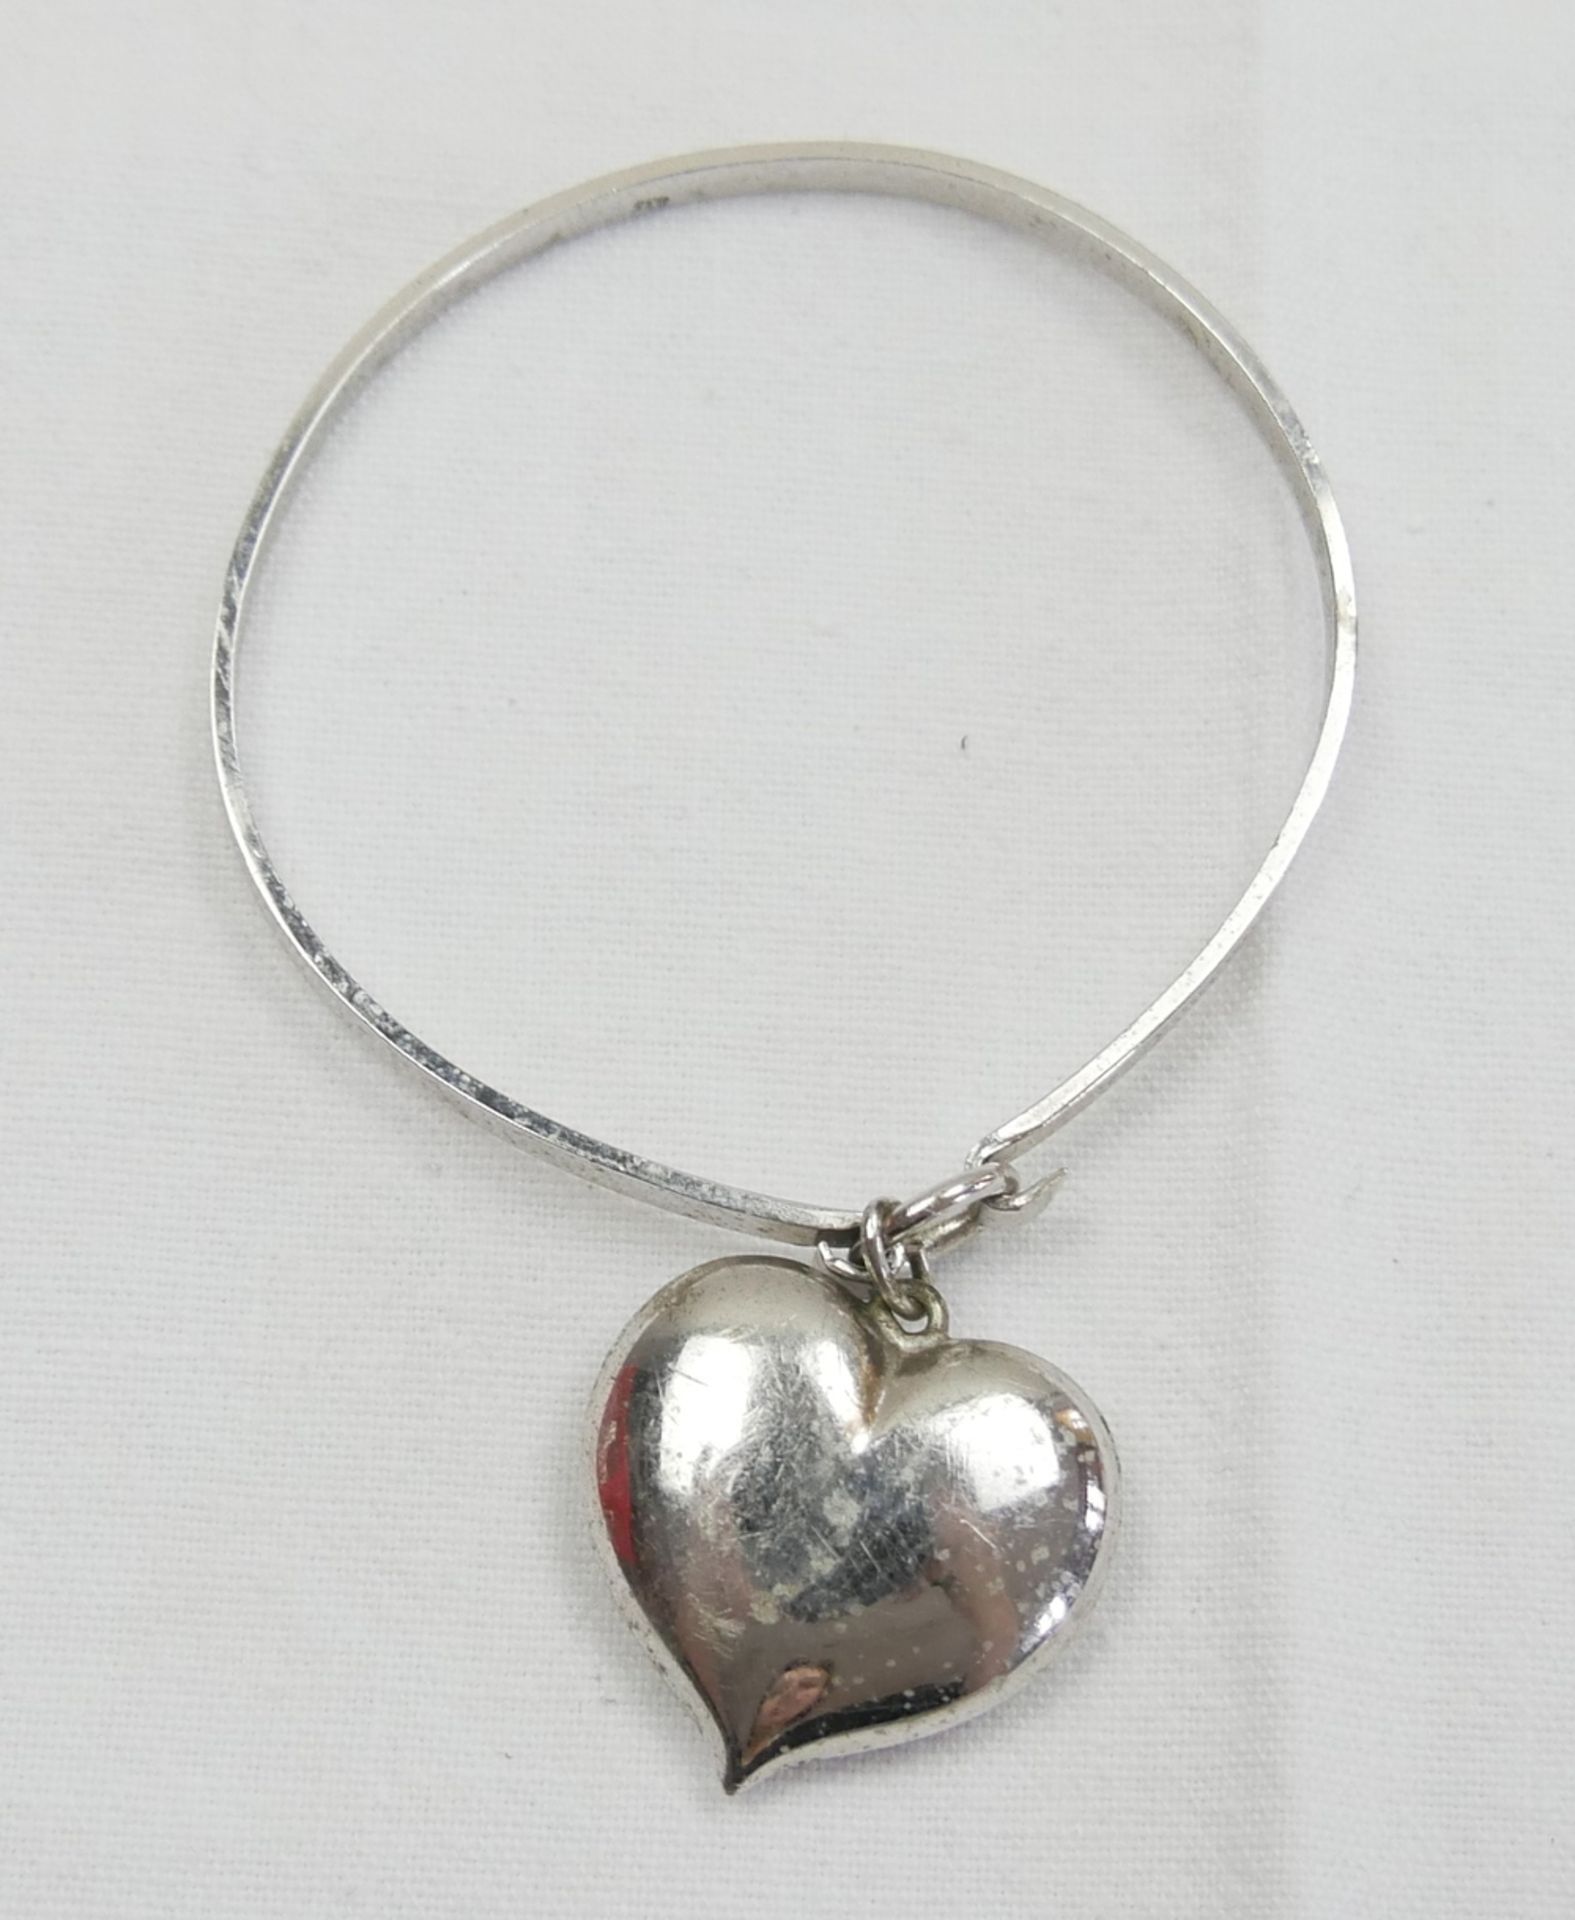 835er Silber Armspange mit Anhänger "Herz". Durchmesser ca. 6 cm